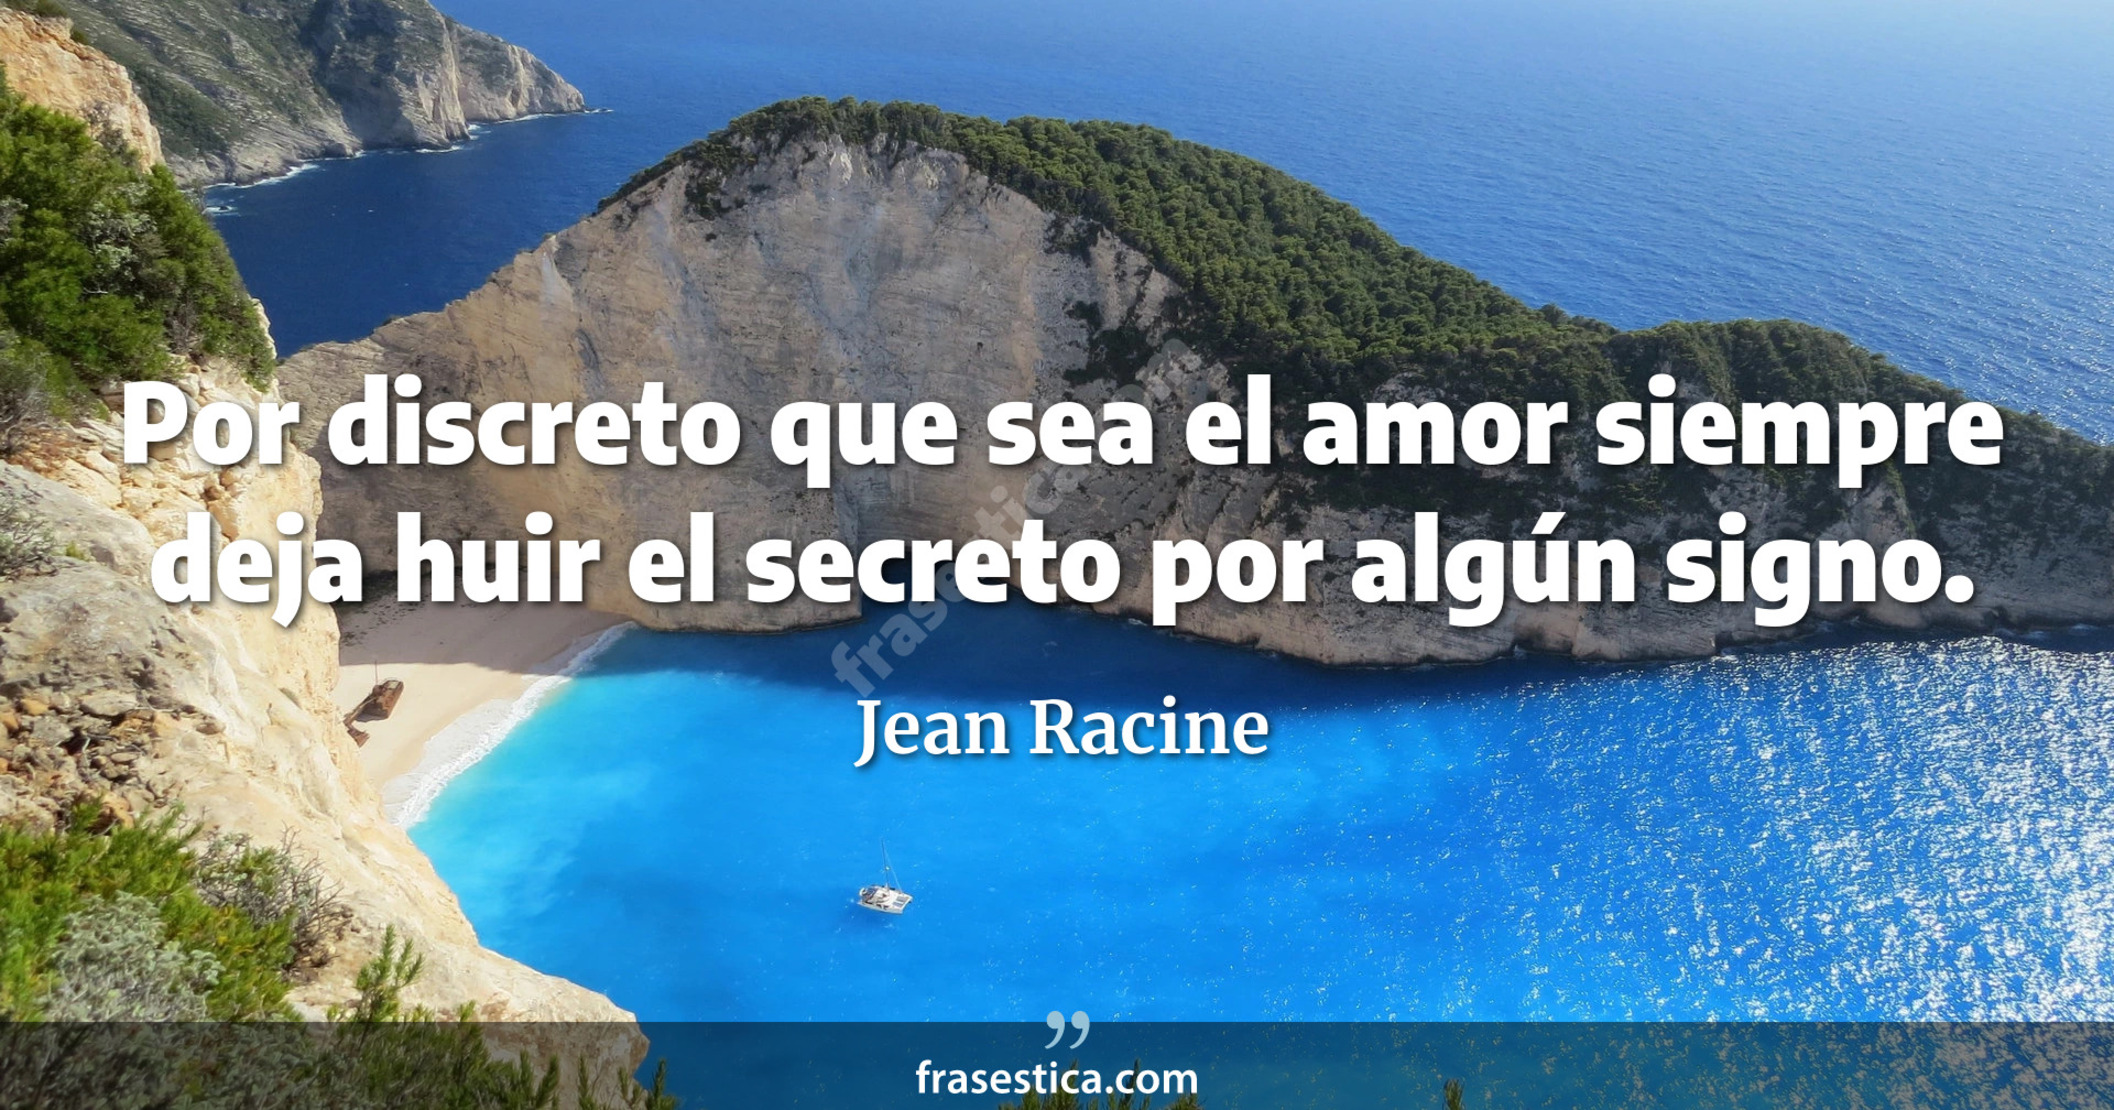 Por discreto que sea el amor siempre deja huir el secreto por algún signo. - Jean Racine